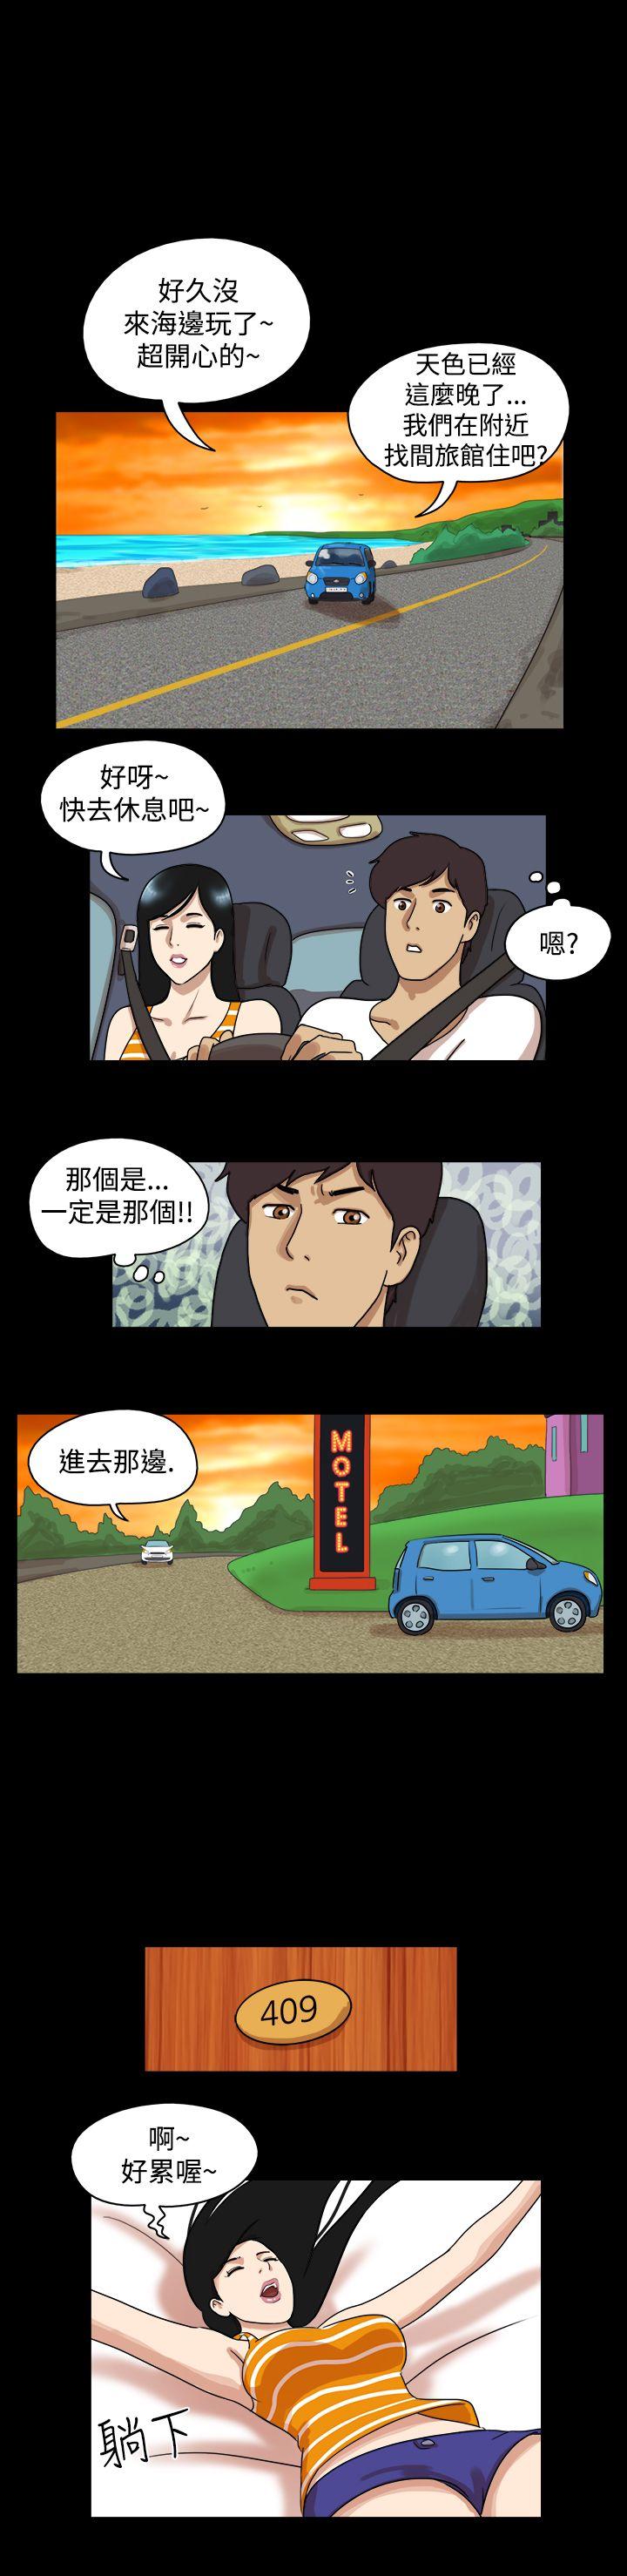 韩国污漫画 17種性幻想第一季 第29话 6